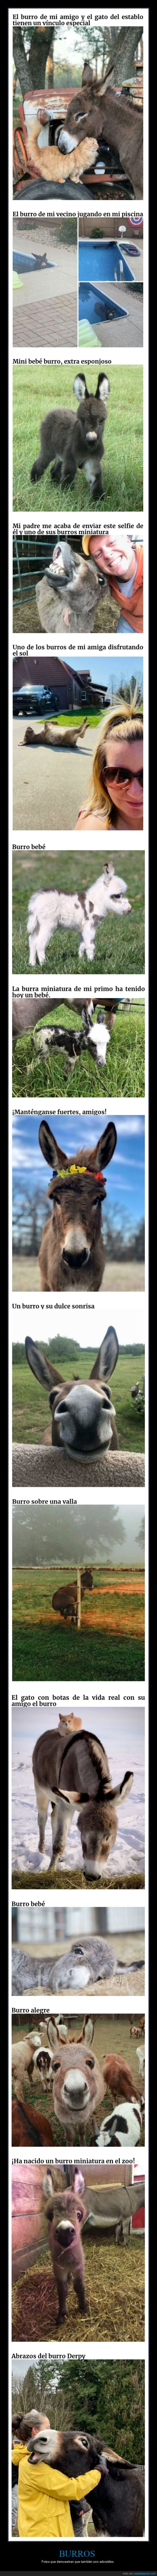 burros,adorables